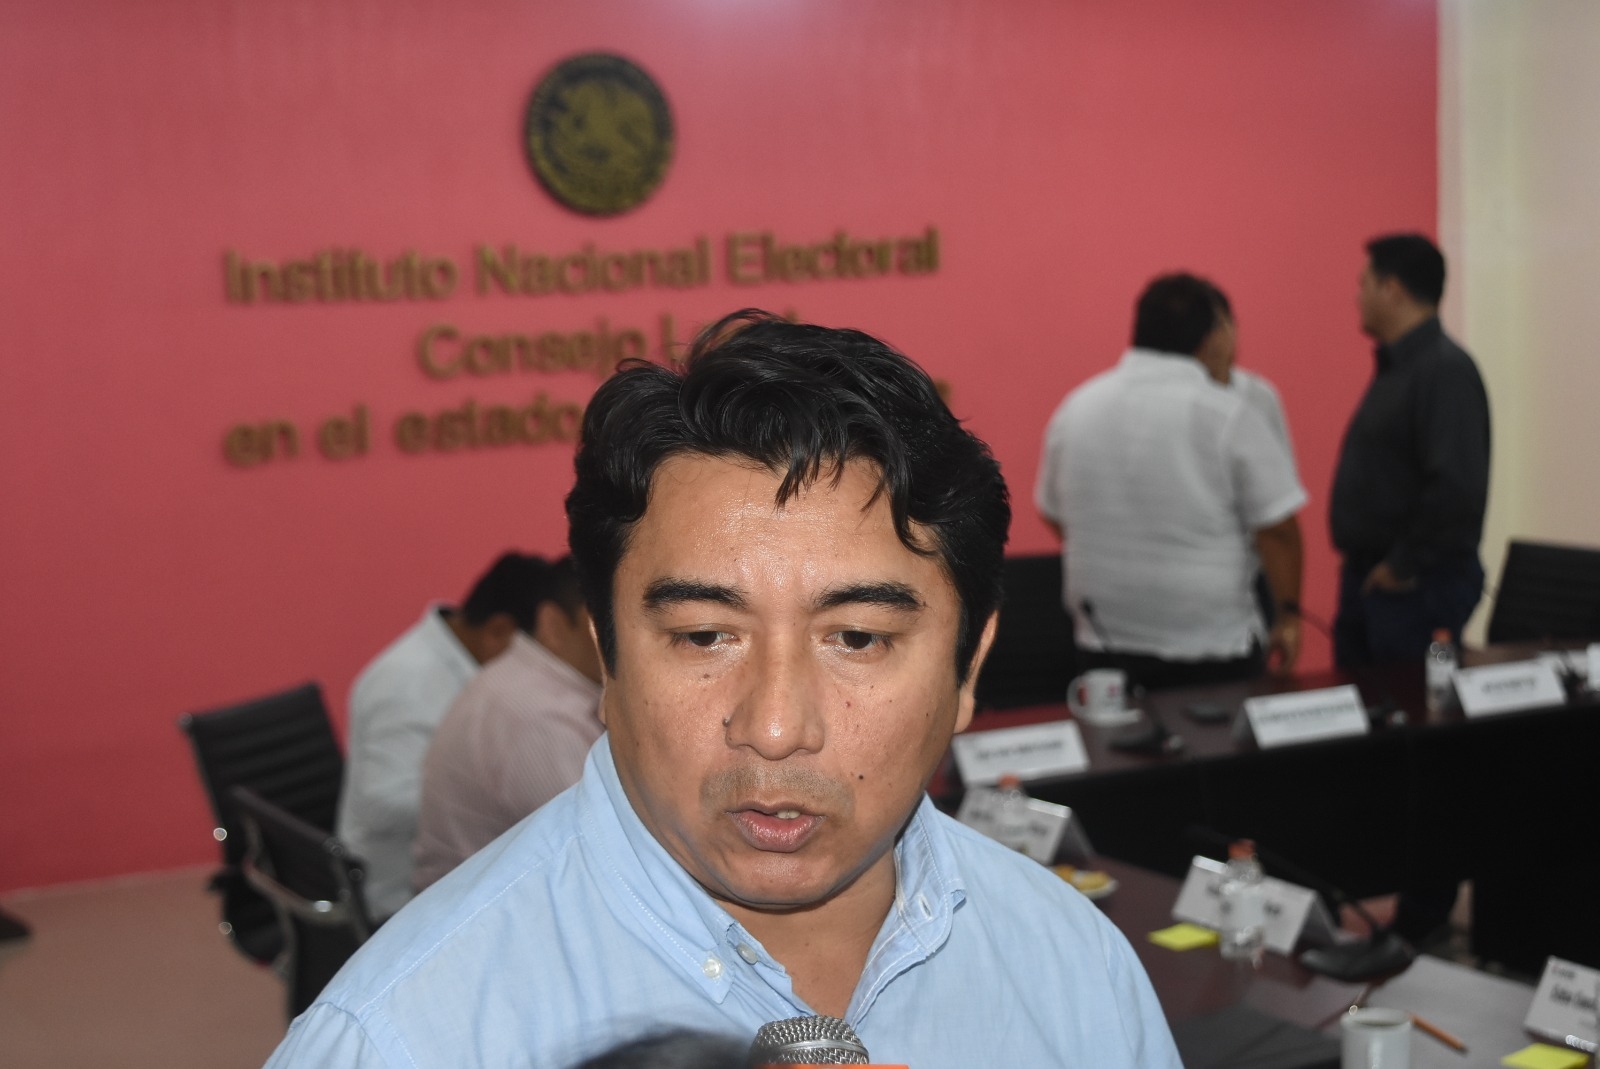 Panista acusa a su dirigente estatal en Campeche de arbitraria